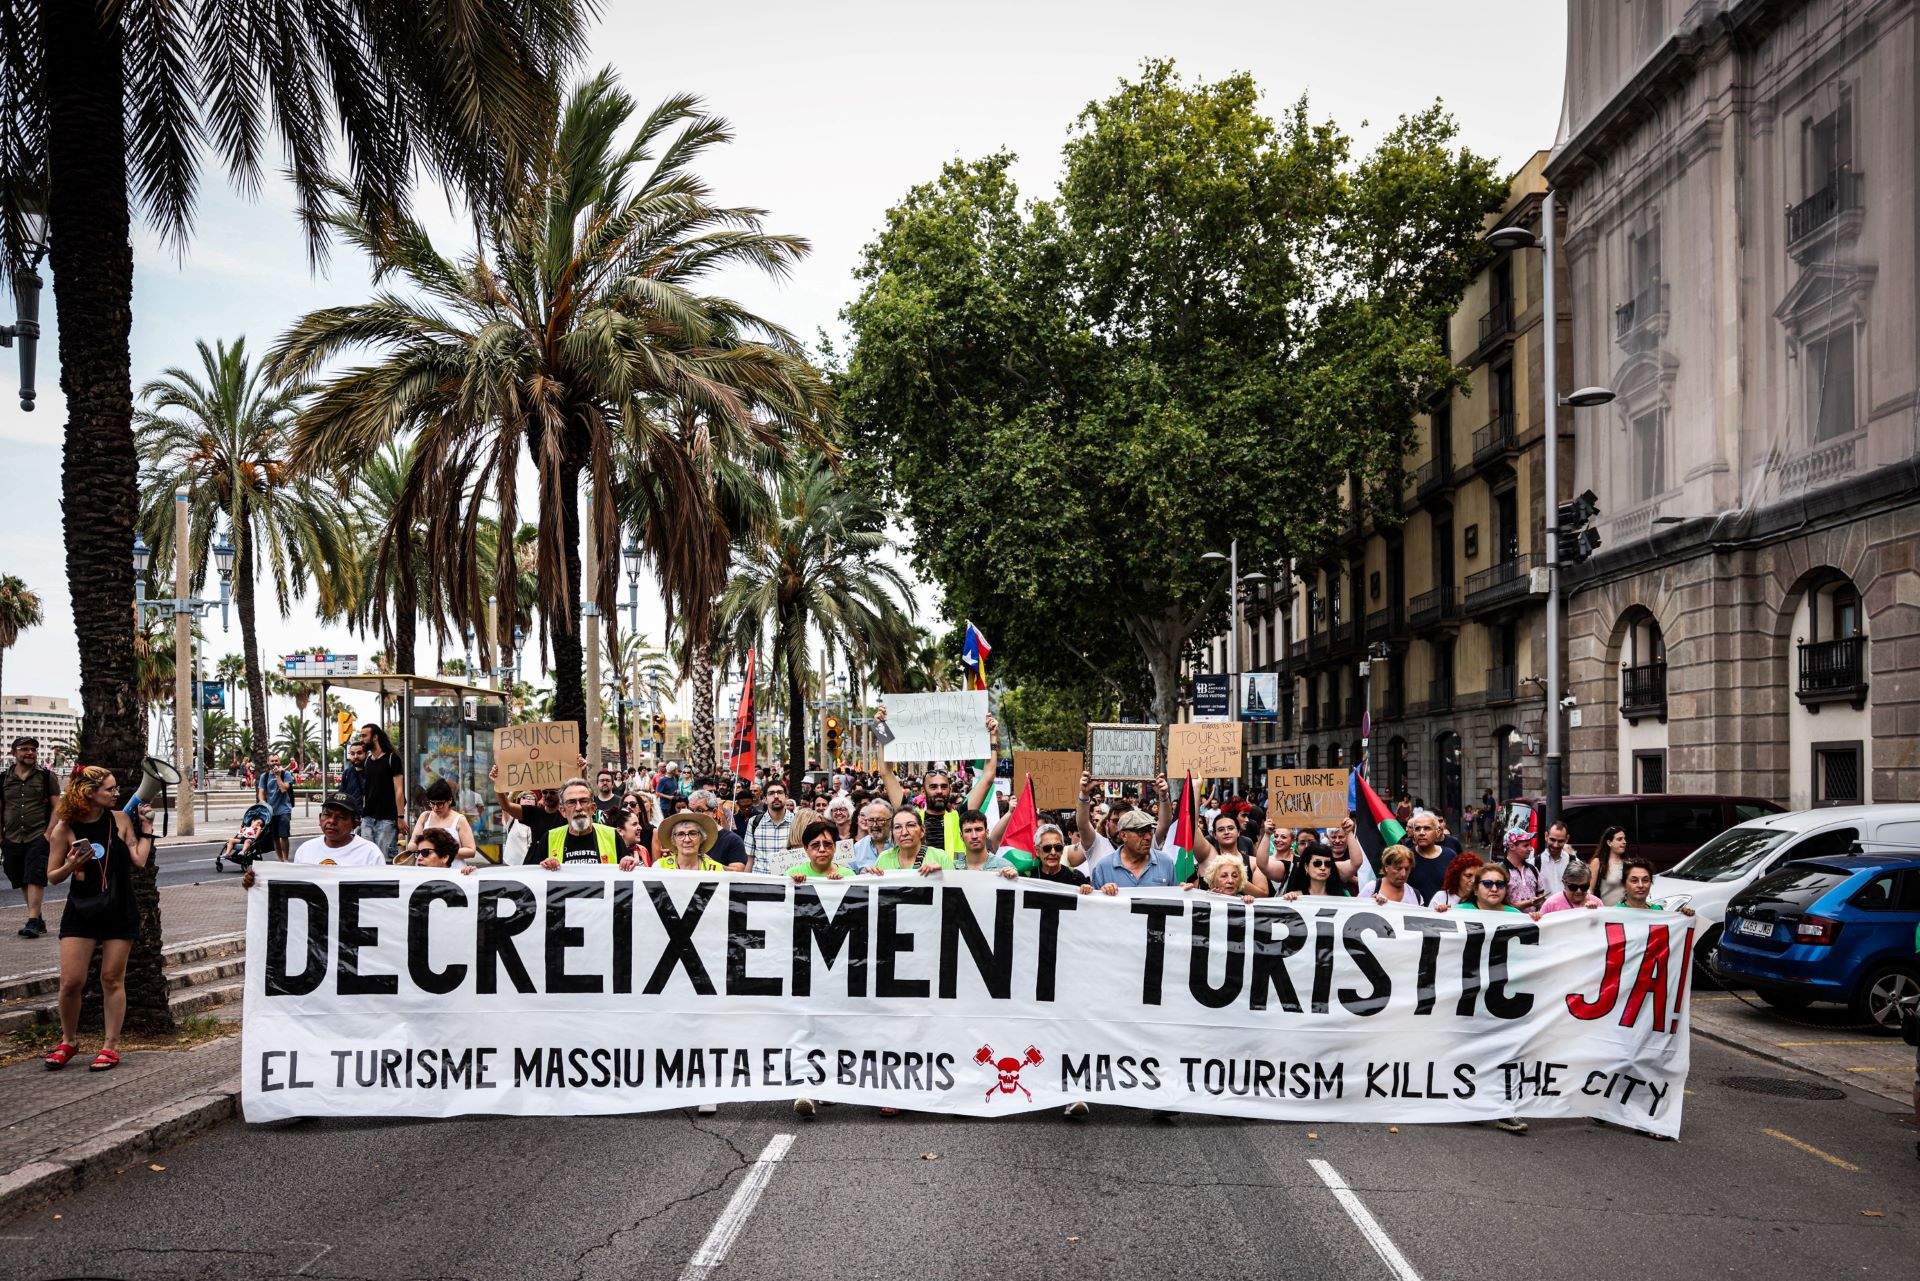 Barcelona se suma a l'onada de protestes contra la massificació turística: "Decreixement ja"